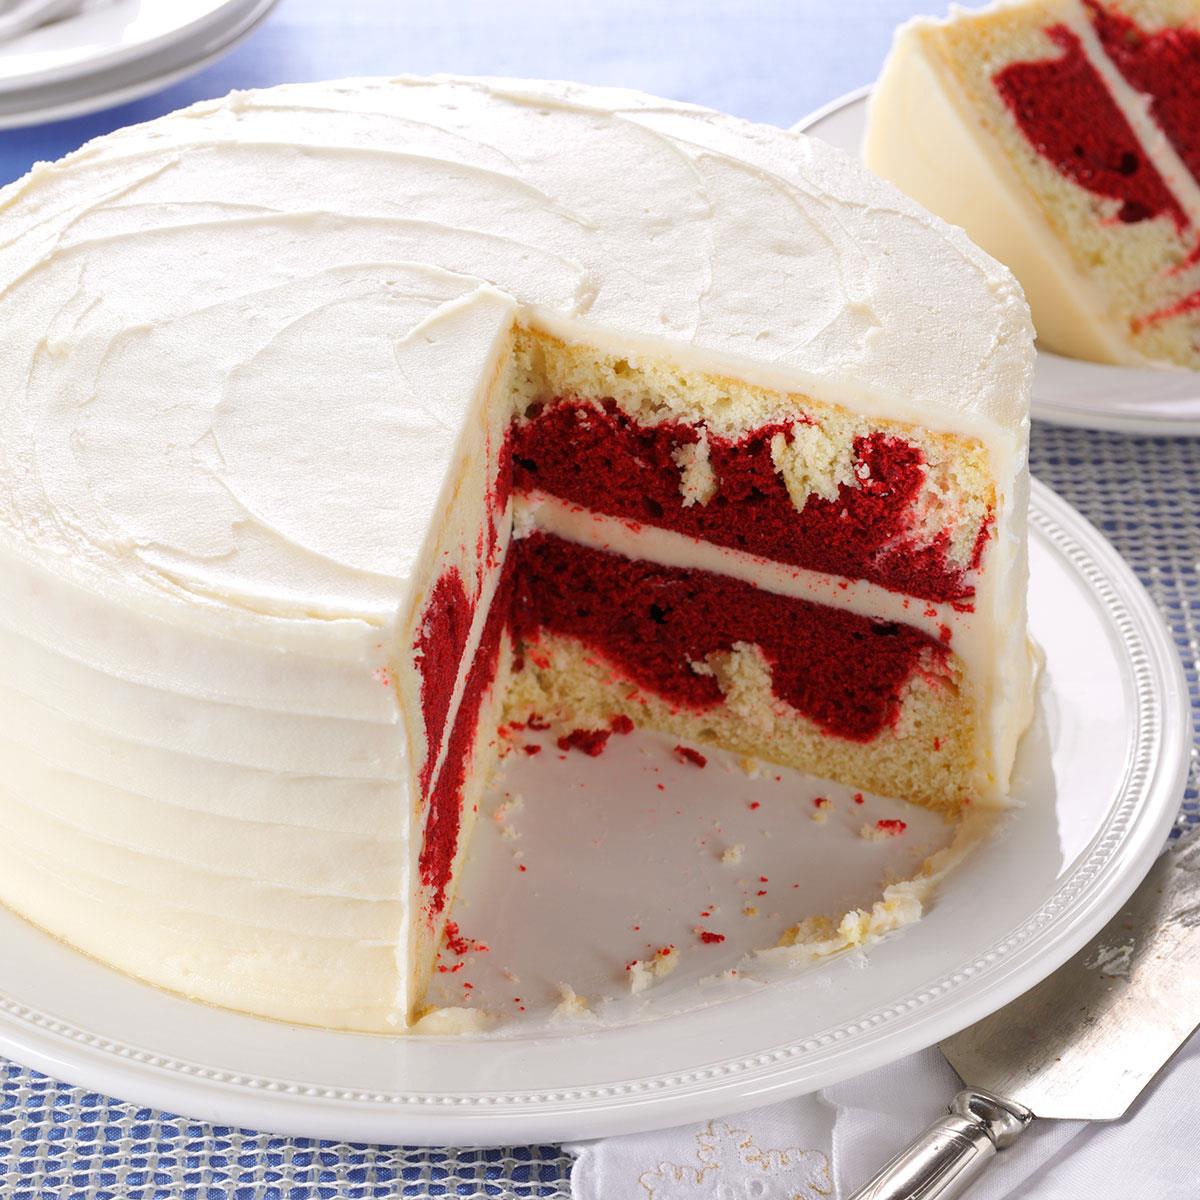 Red Velvet Marble Cake Recipe: How to Make It